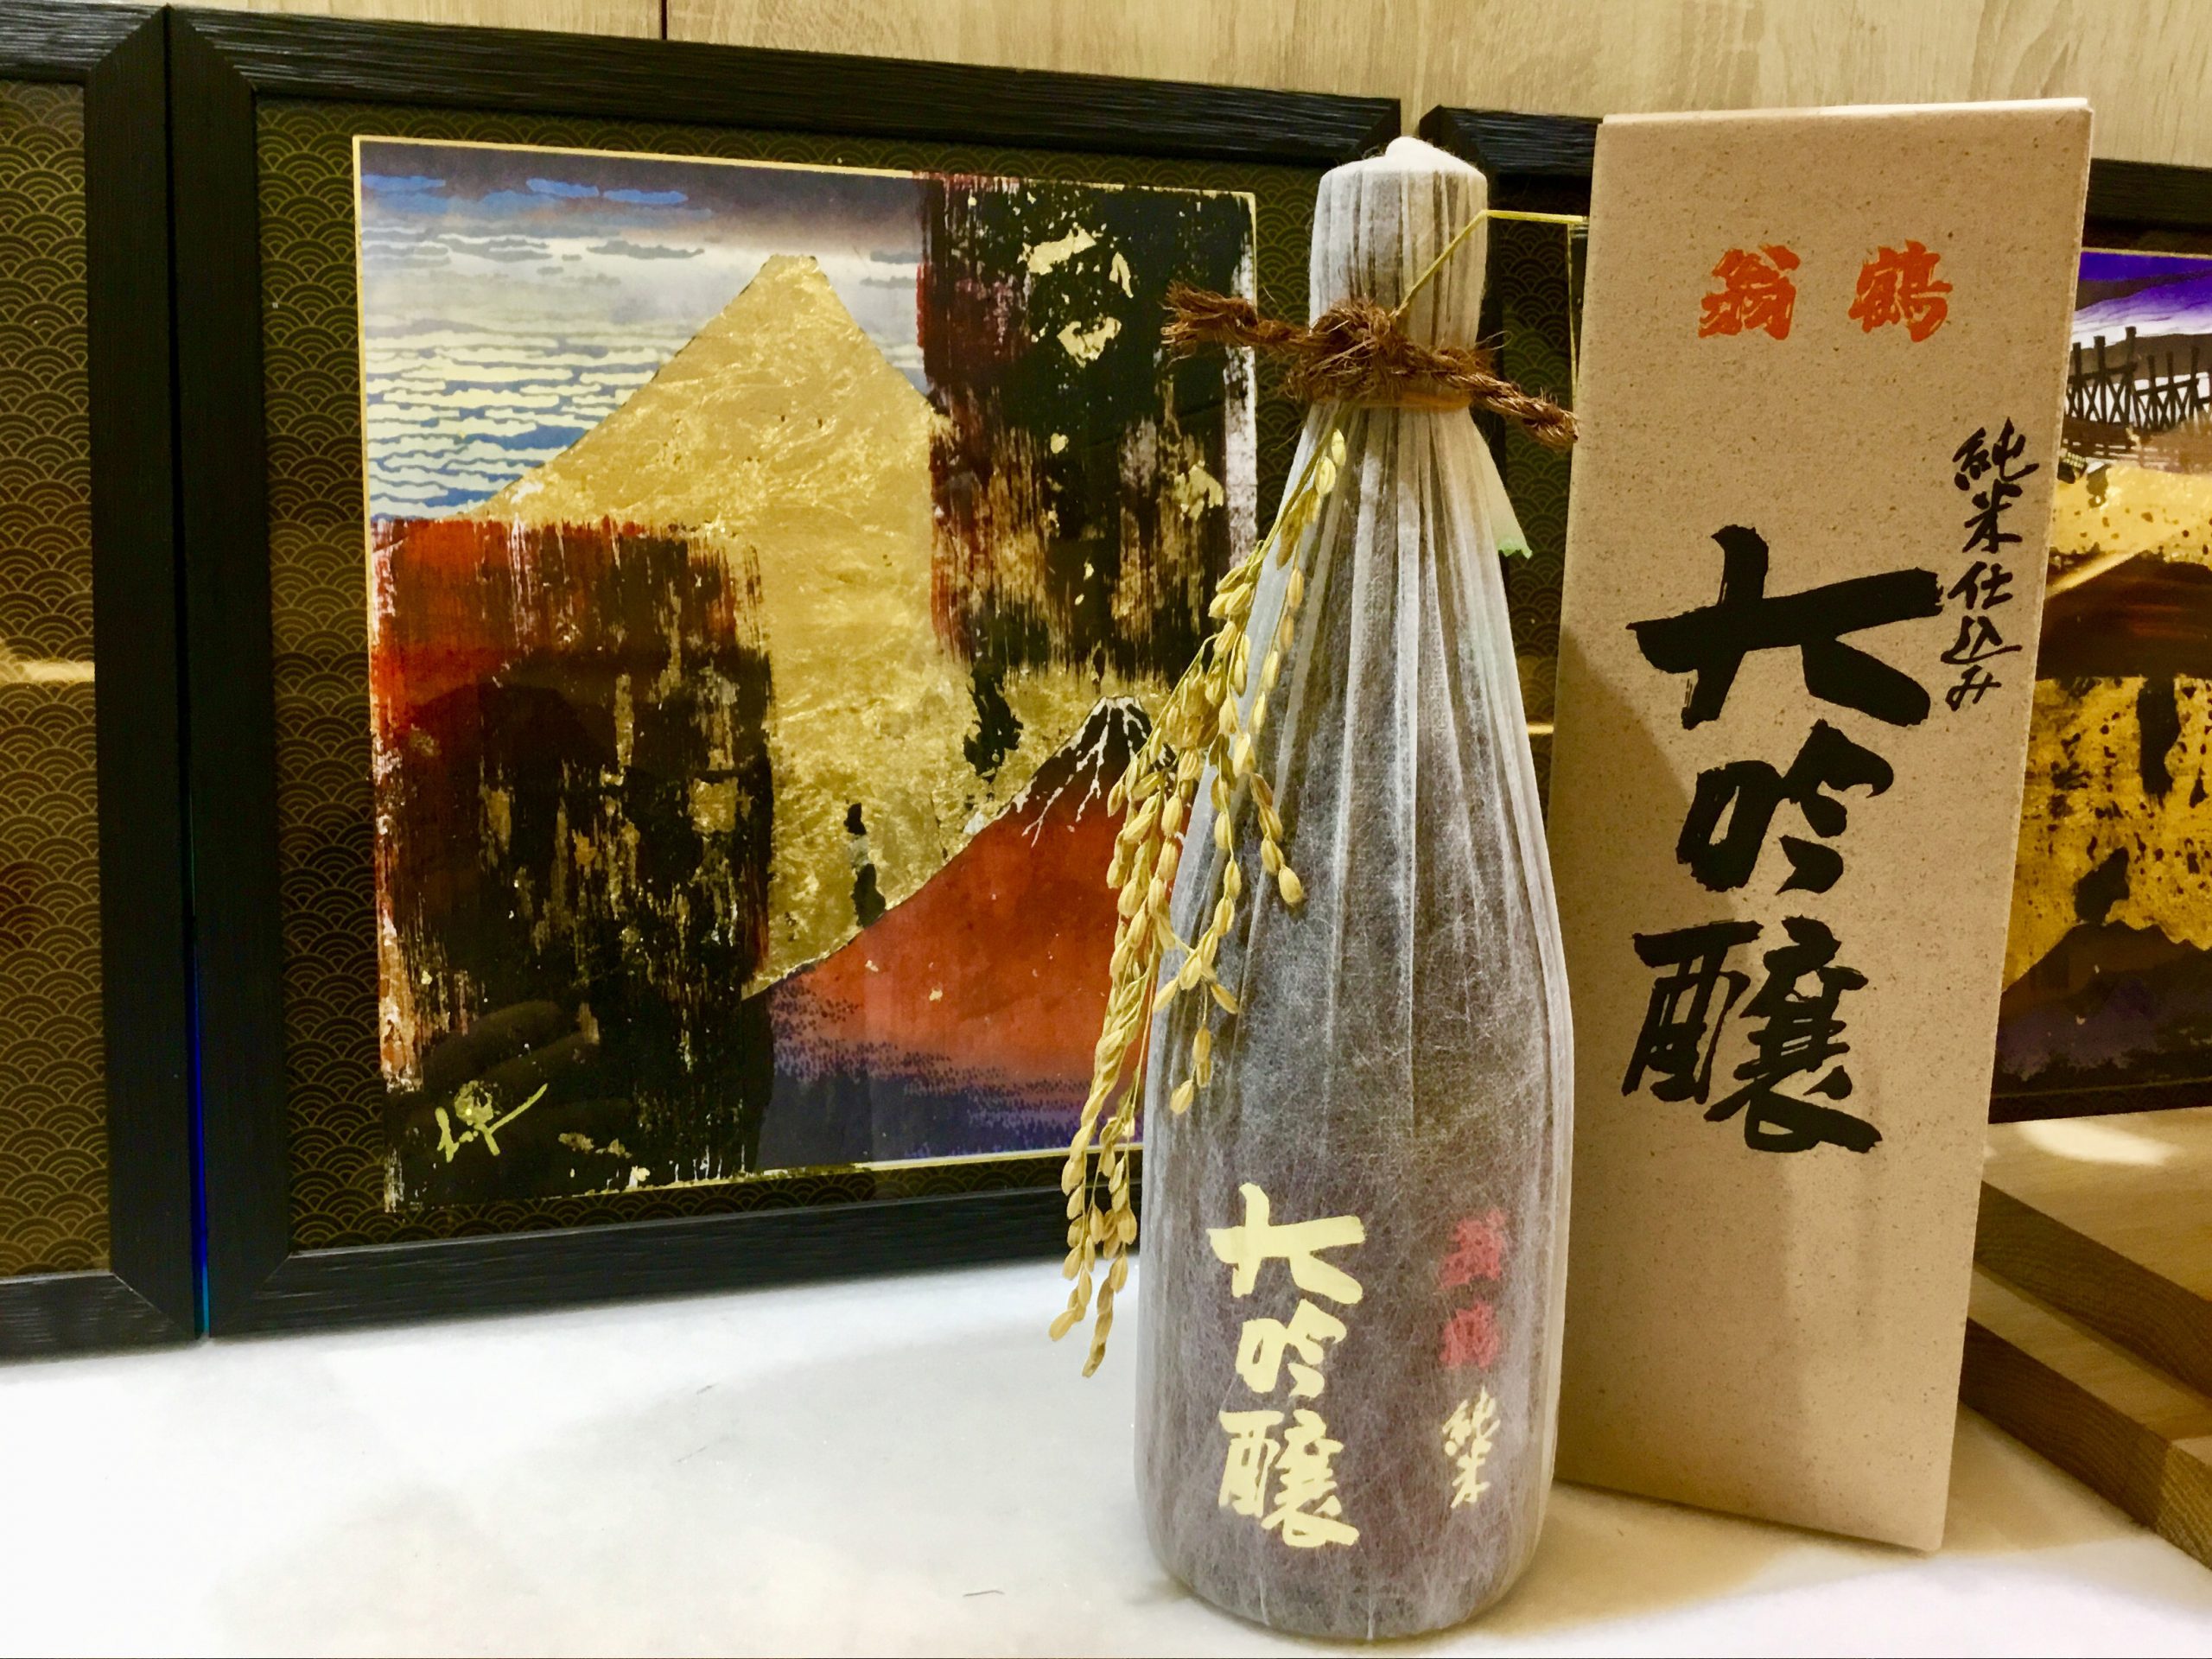 Bouteille de saké dans son emballage devant une peinture